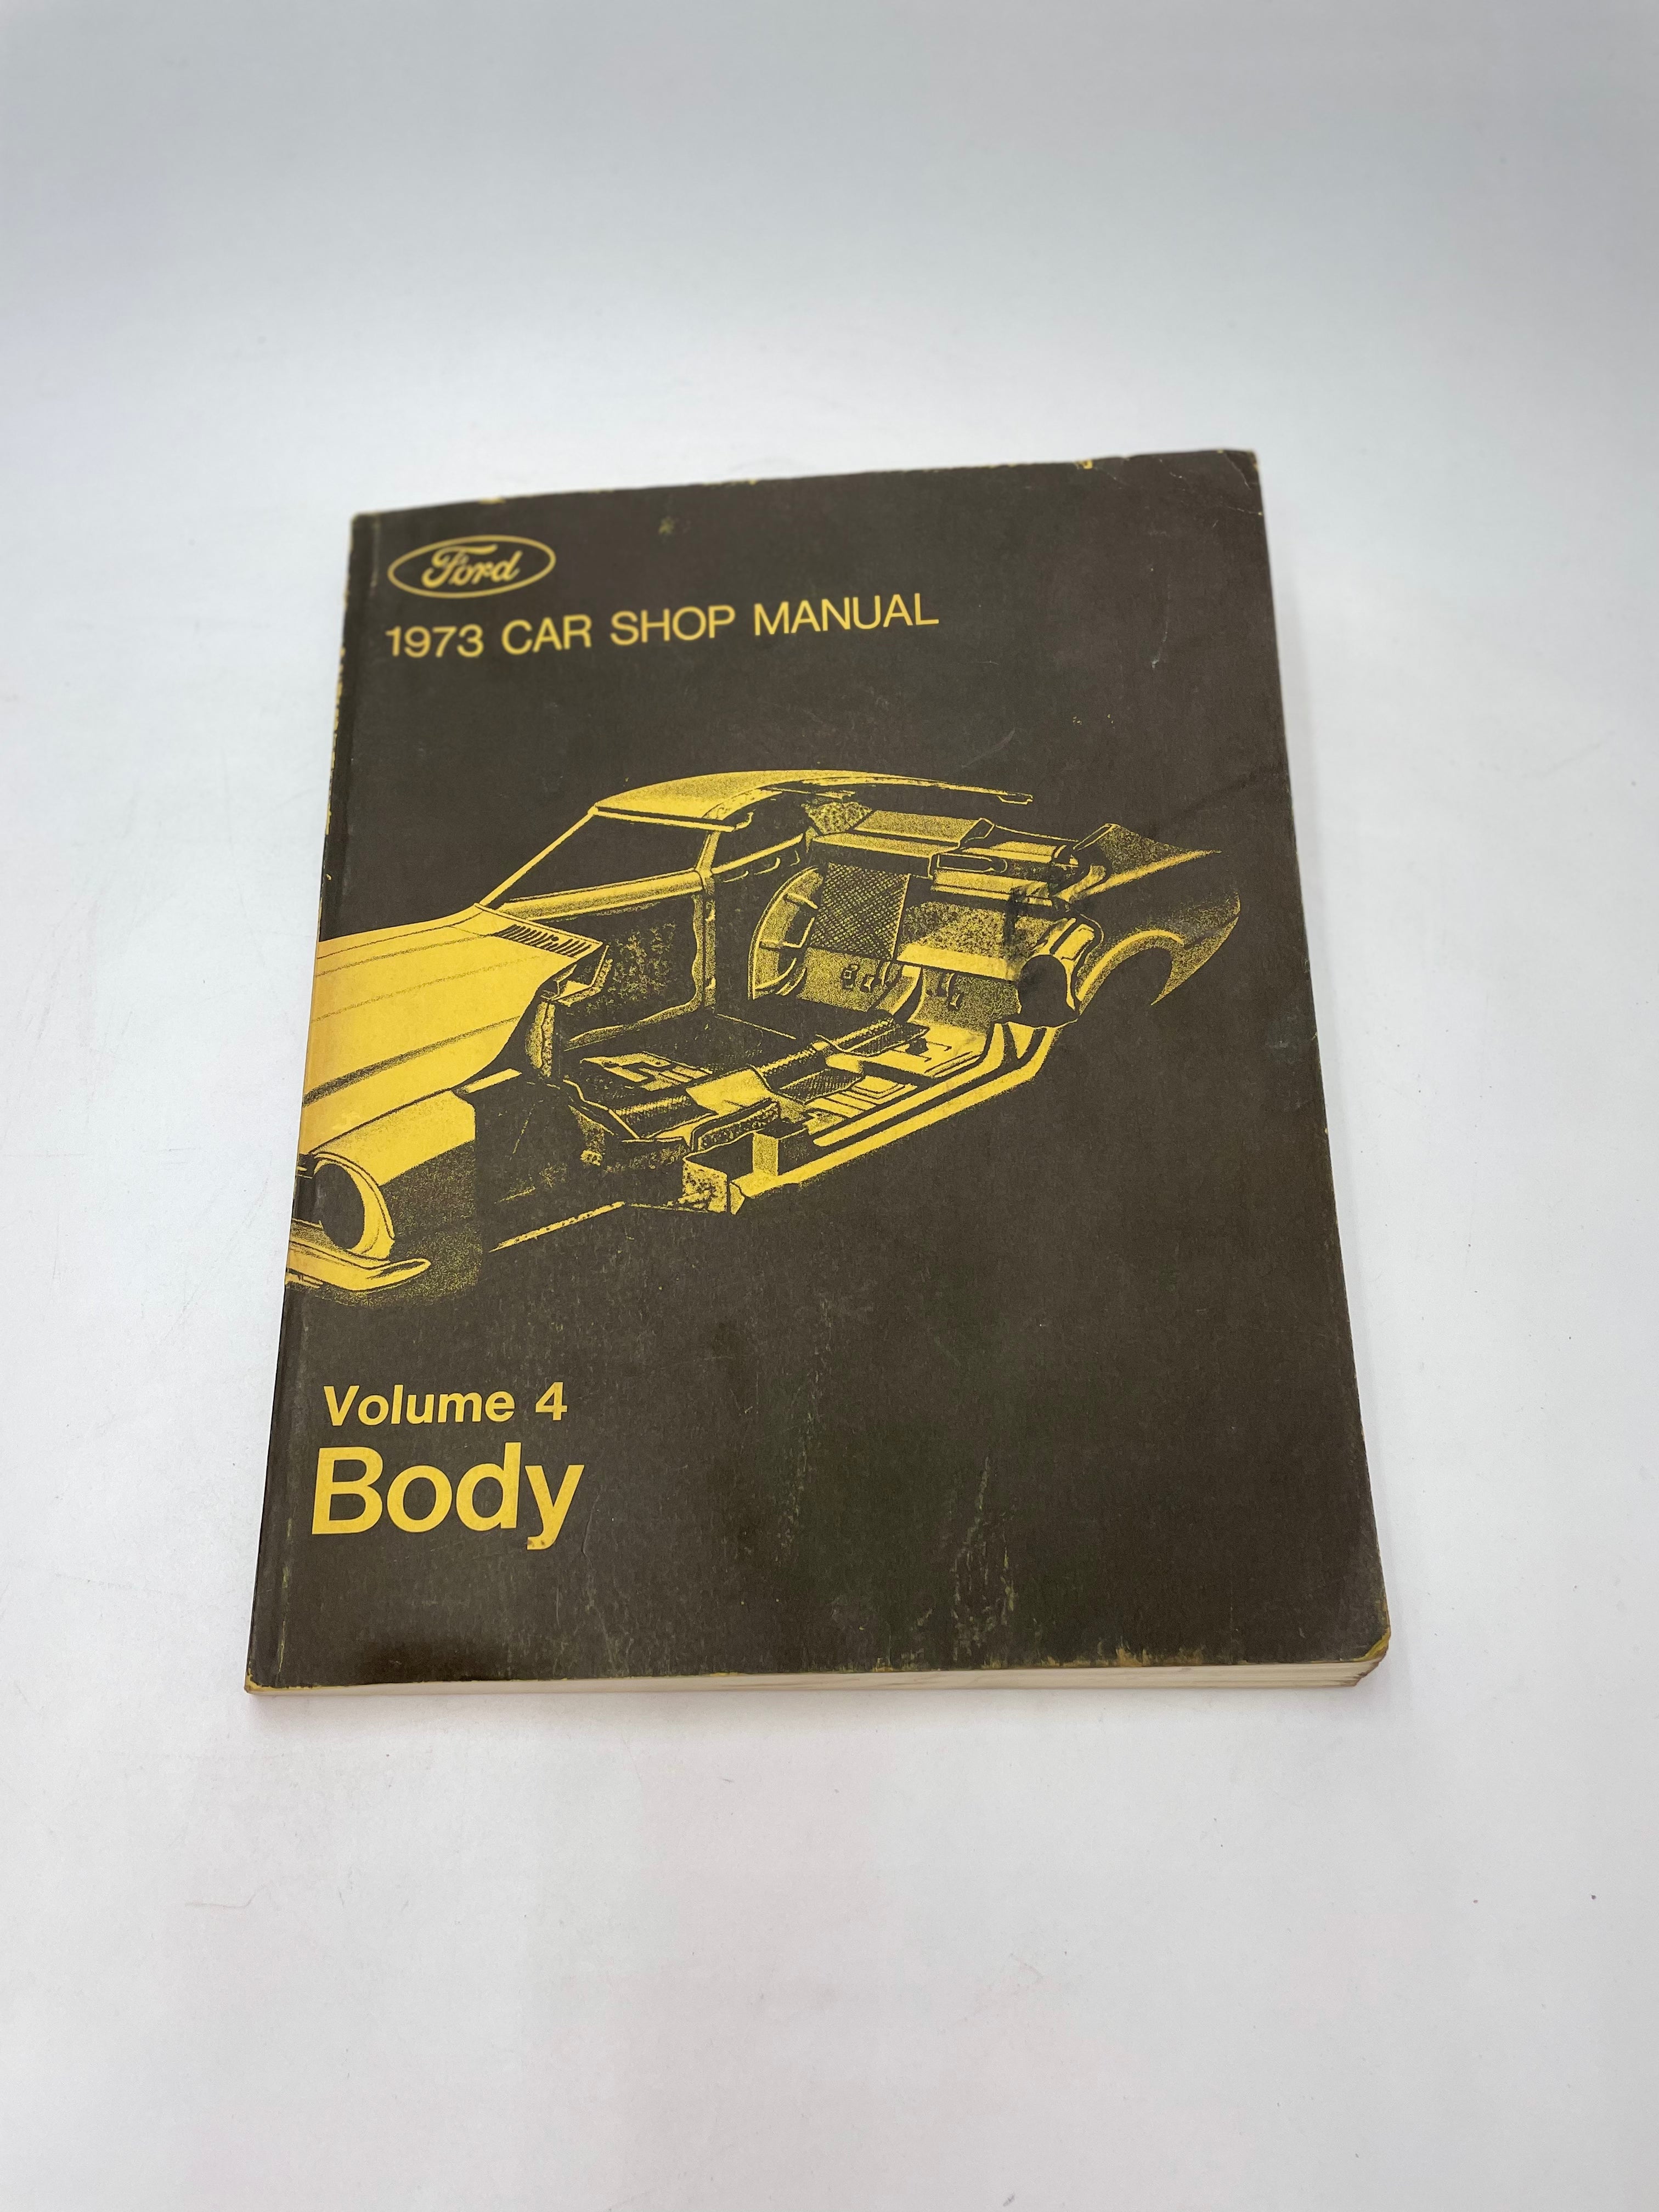 Manuels d'atelier de voiture Ford 1973 (volumes 1 à 6)